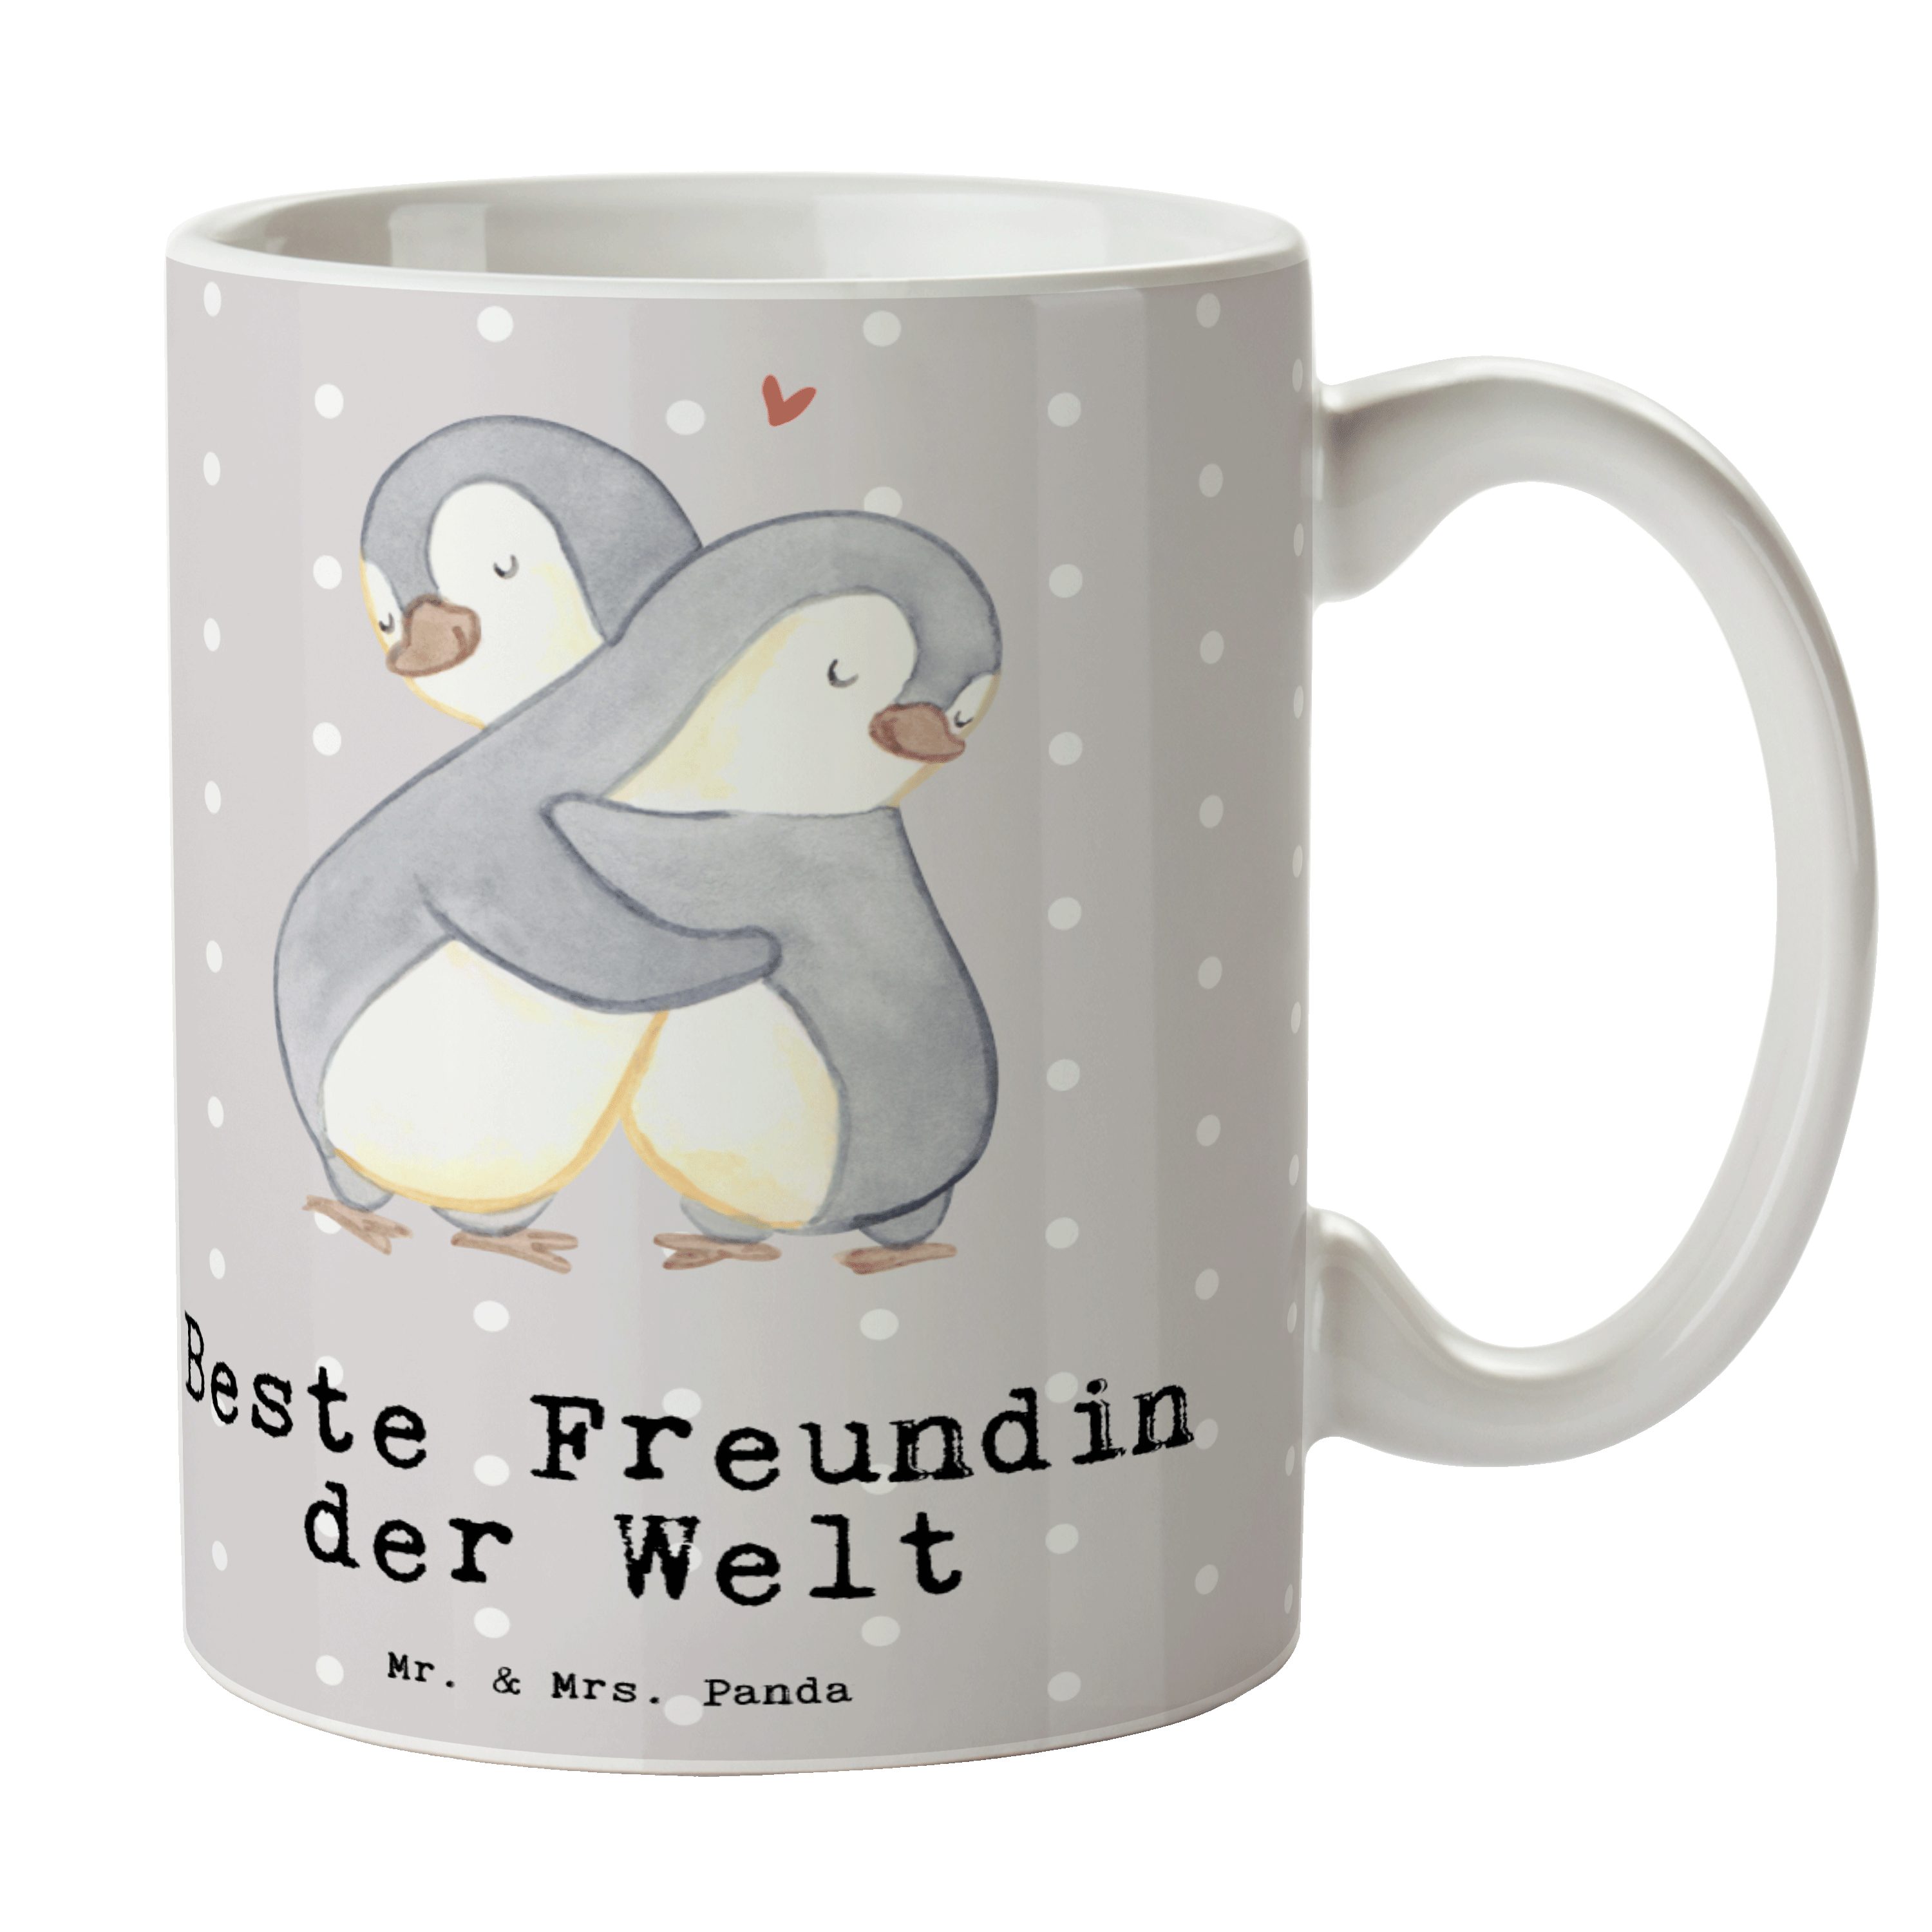 Mr. & Mrs. Panda Tasse Pinguin Beste Freundin der Welt - Grau Pastell - Geschenk, Kaffeetass, Keramik